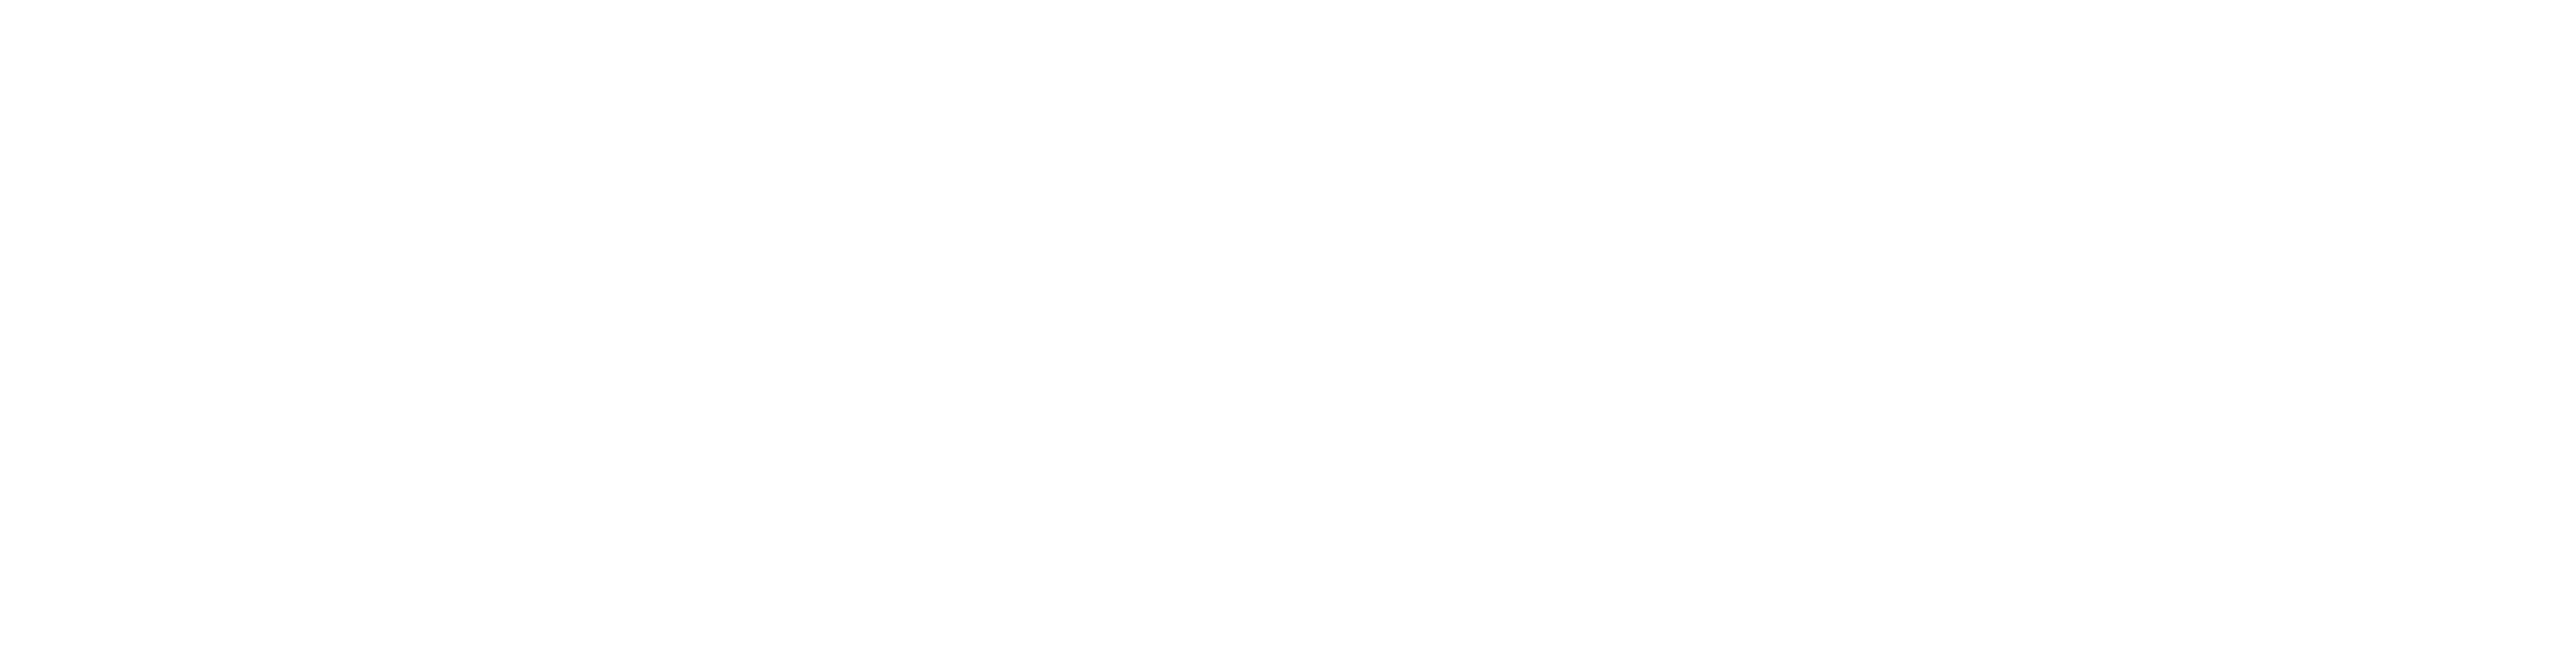 2023 Southwestern Law School Logo in White